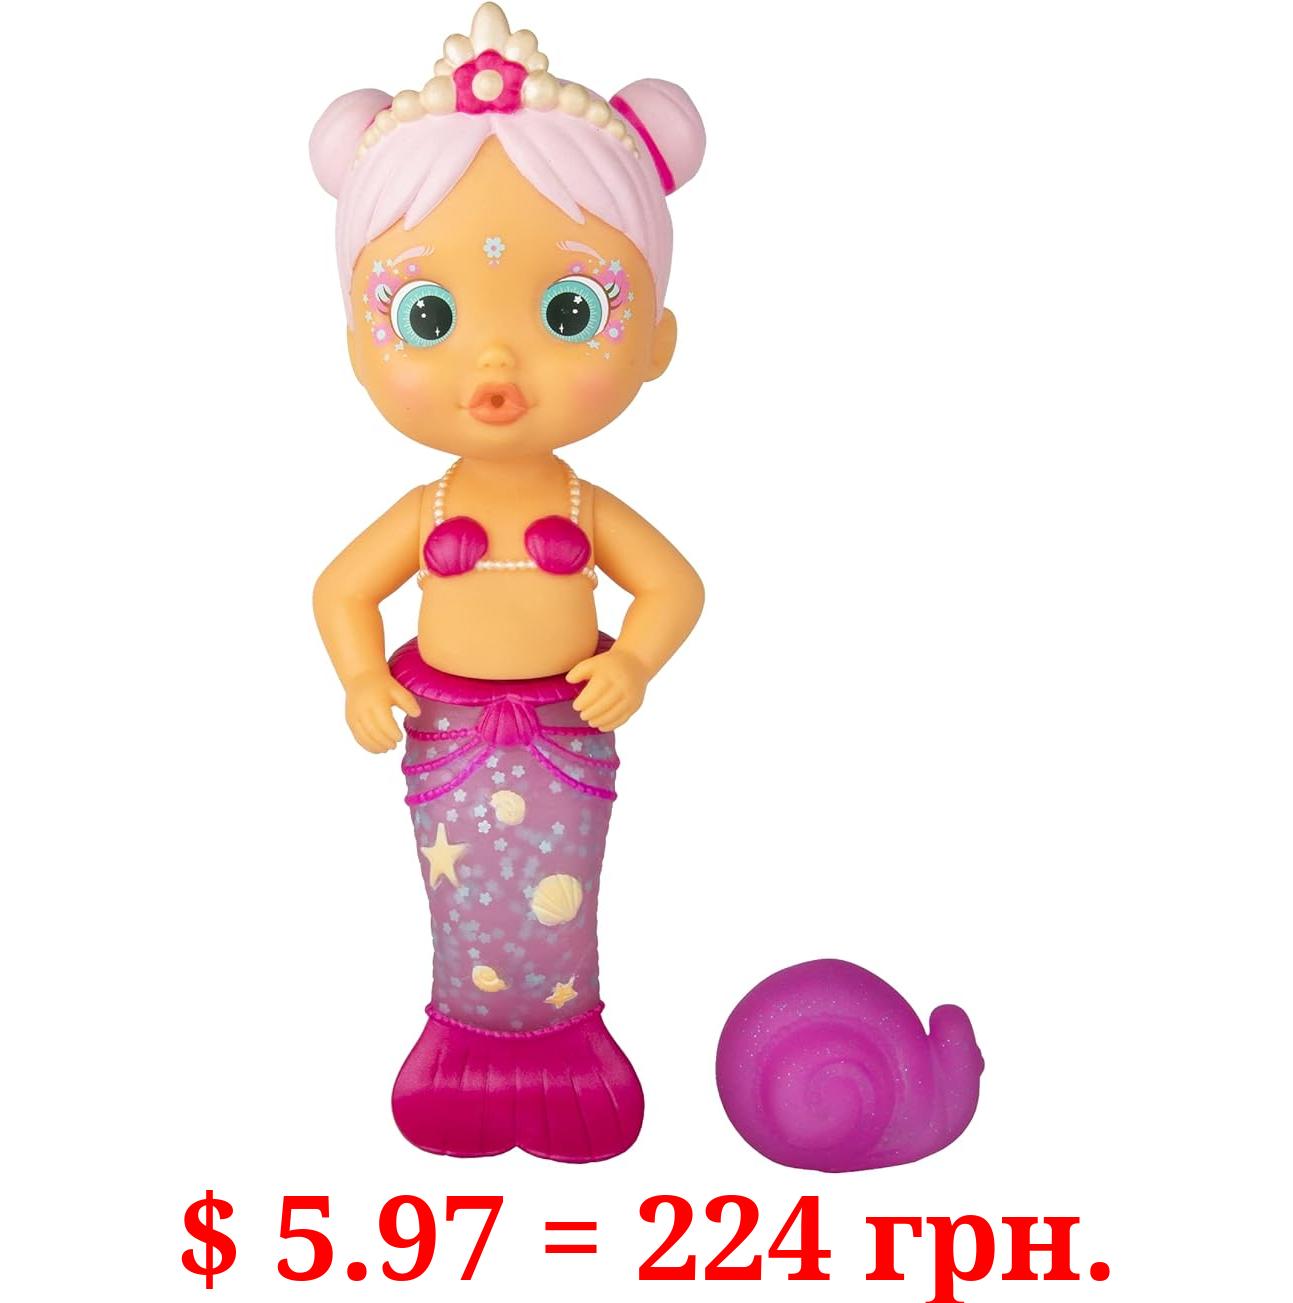 Bloopies Mermaids Sweety - Bath Toy, Multi